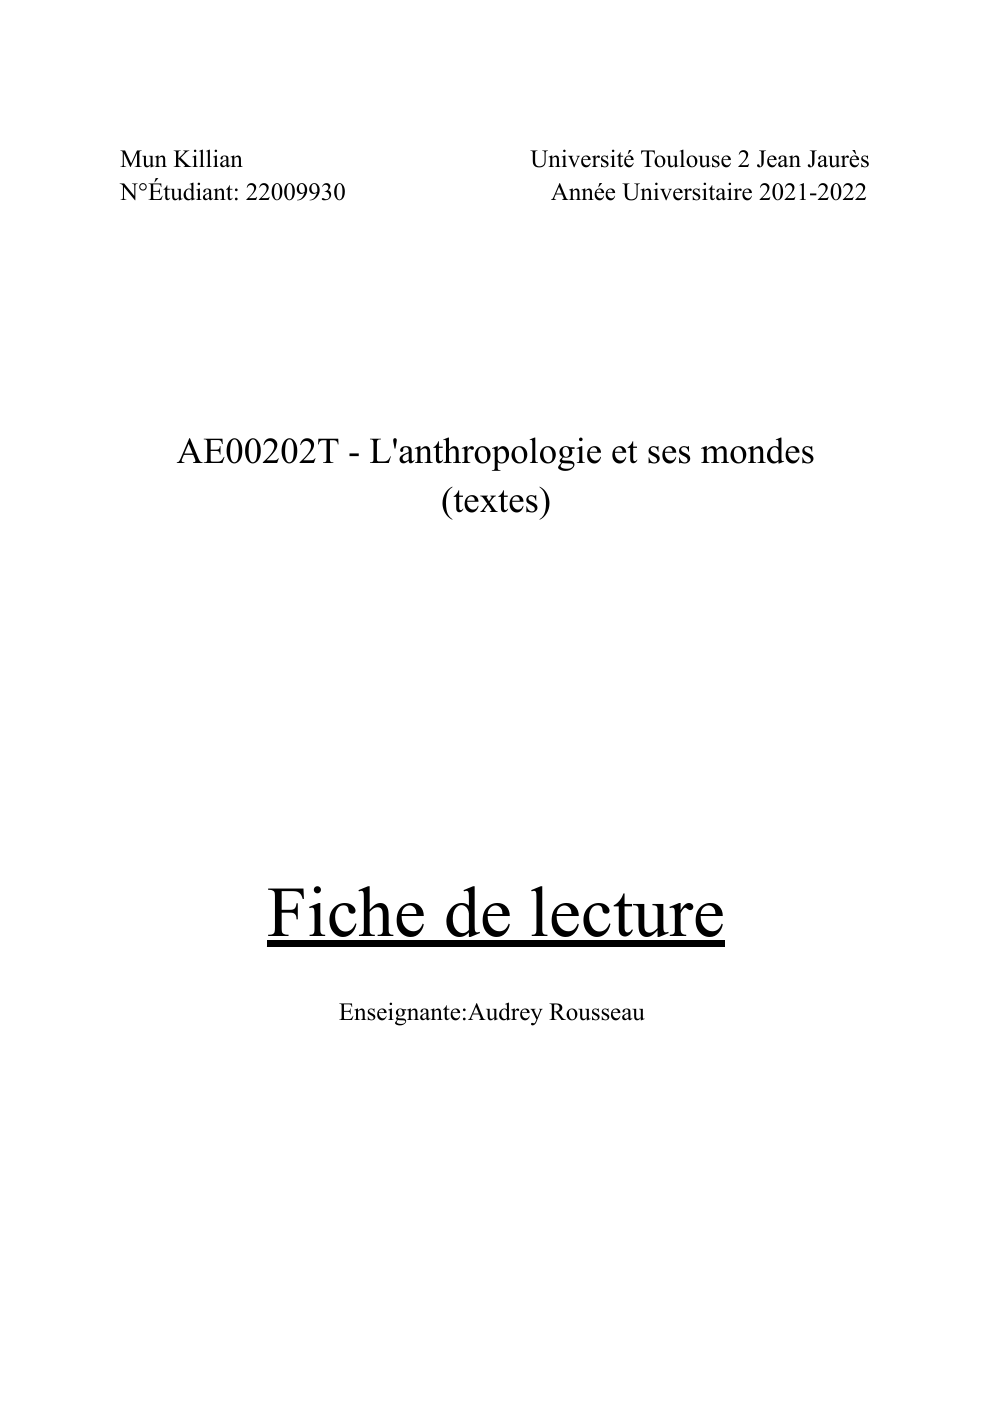 Prévisualisation du document Fiche de Lecture “Les mythes politiques de colonisation et décolonisation en Afrique” de Georges Balandier.